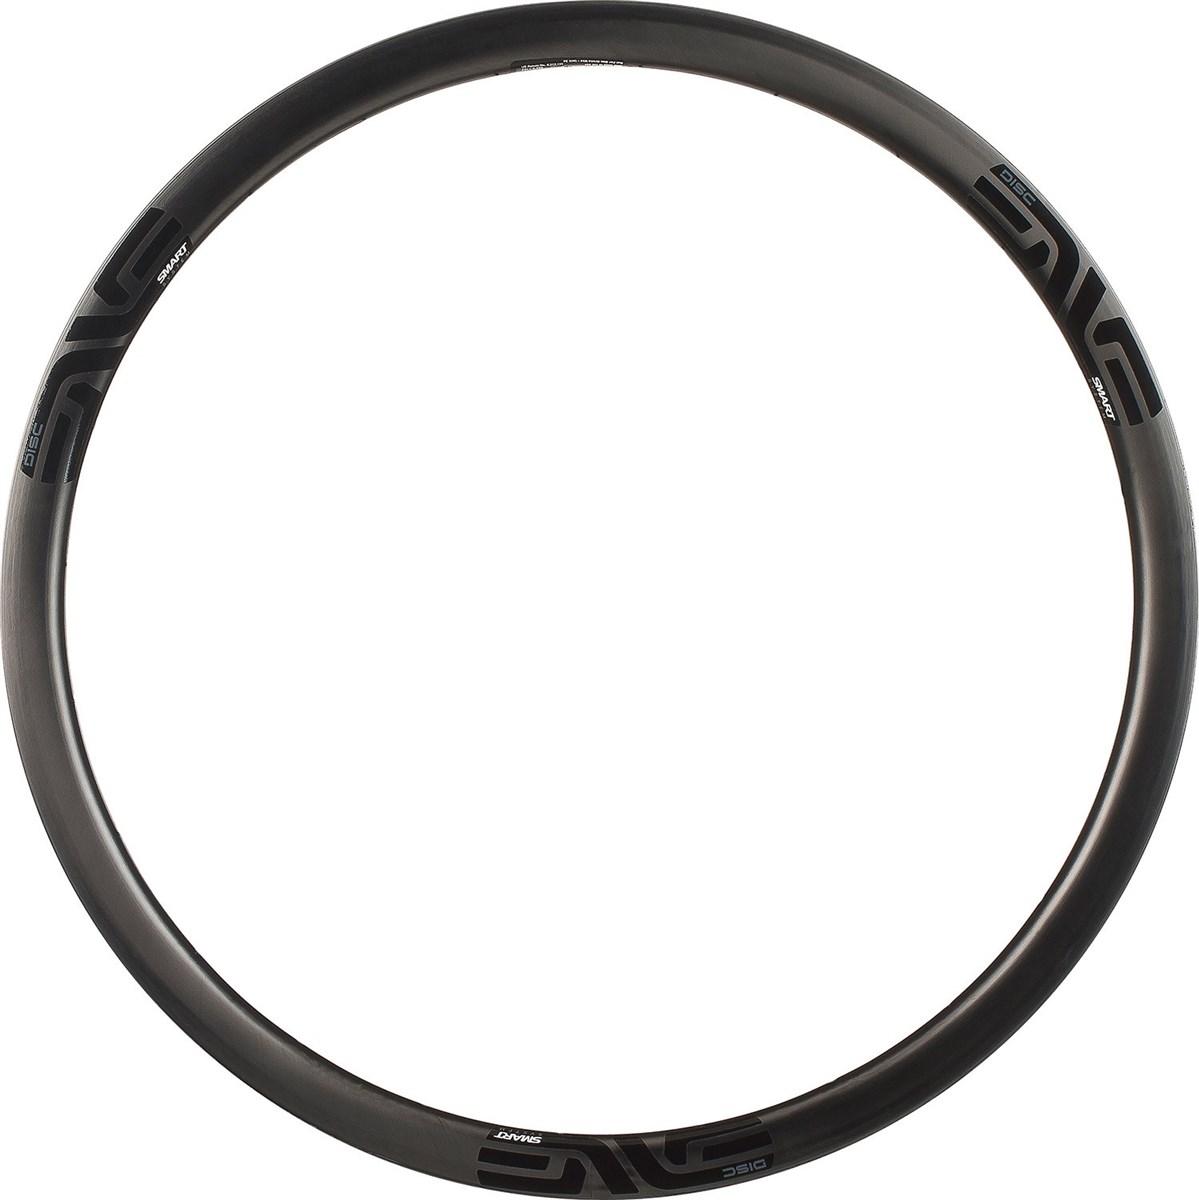 Enve 3.4 SES Clincher Disc Front Road Rim product image